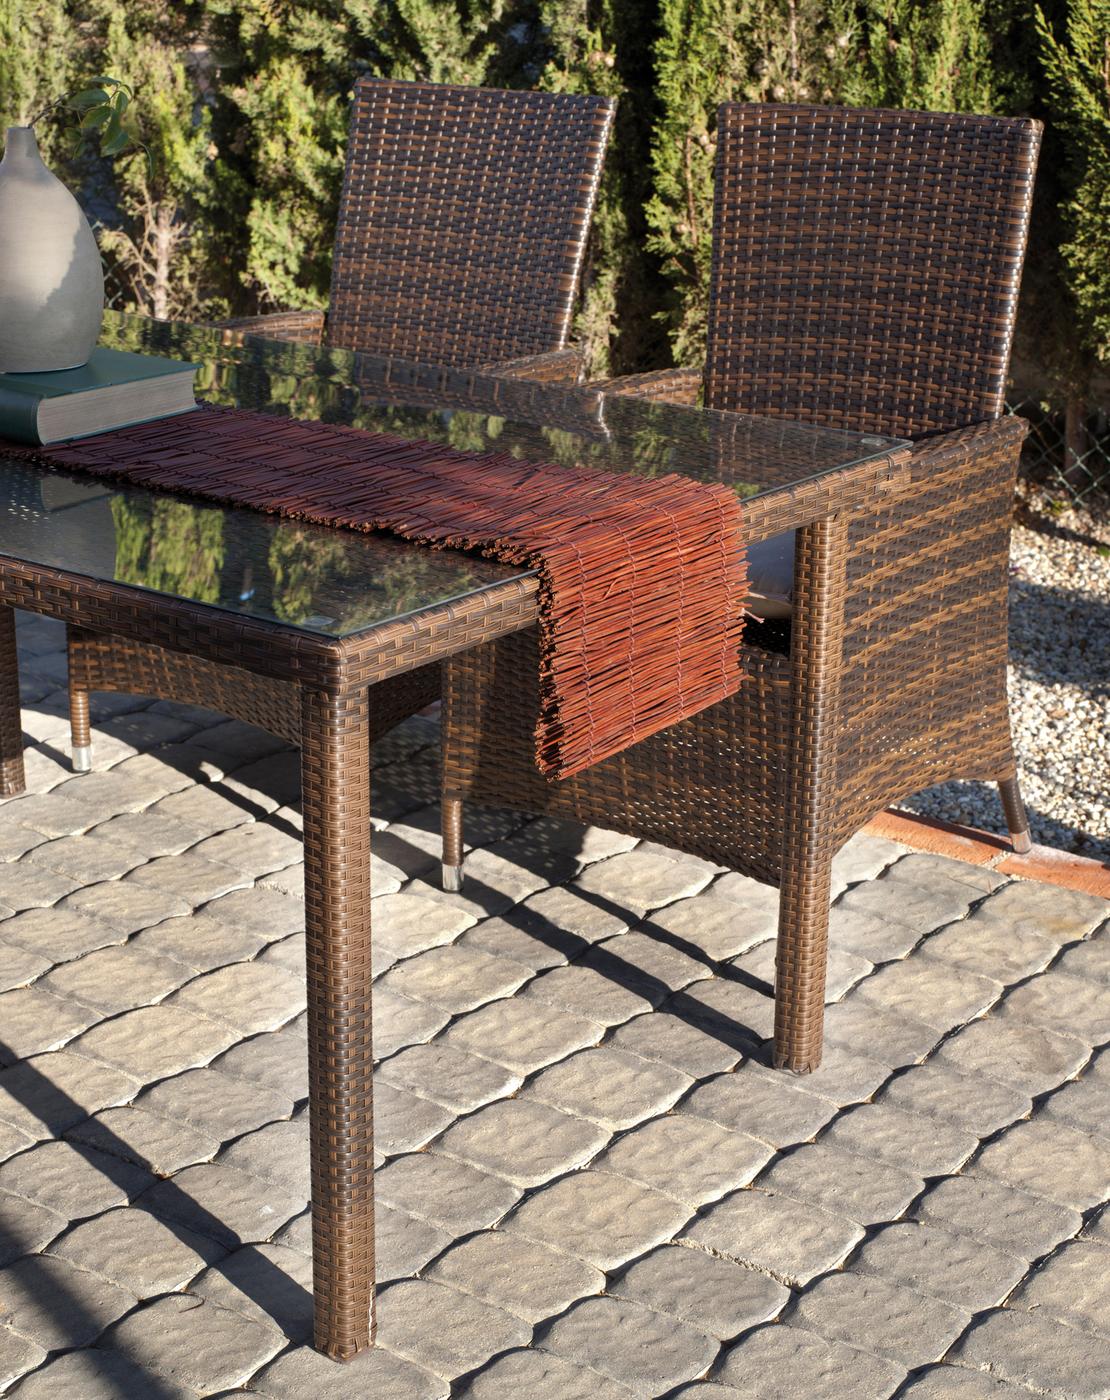 Conjunto Ratán Sint. Bergamo-Reus 150 - Conjunto de ratán sintético color marrón: mesa rectangular de 150 cm. + 4 sillones confort con cojín